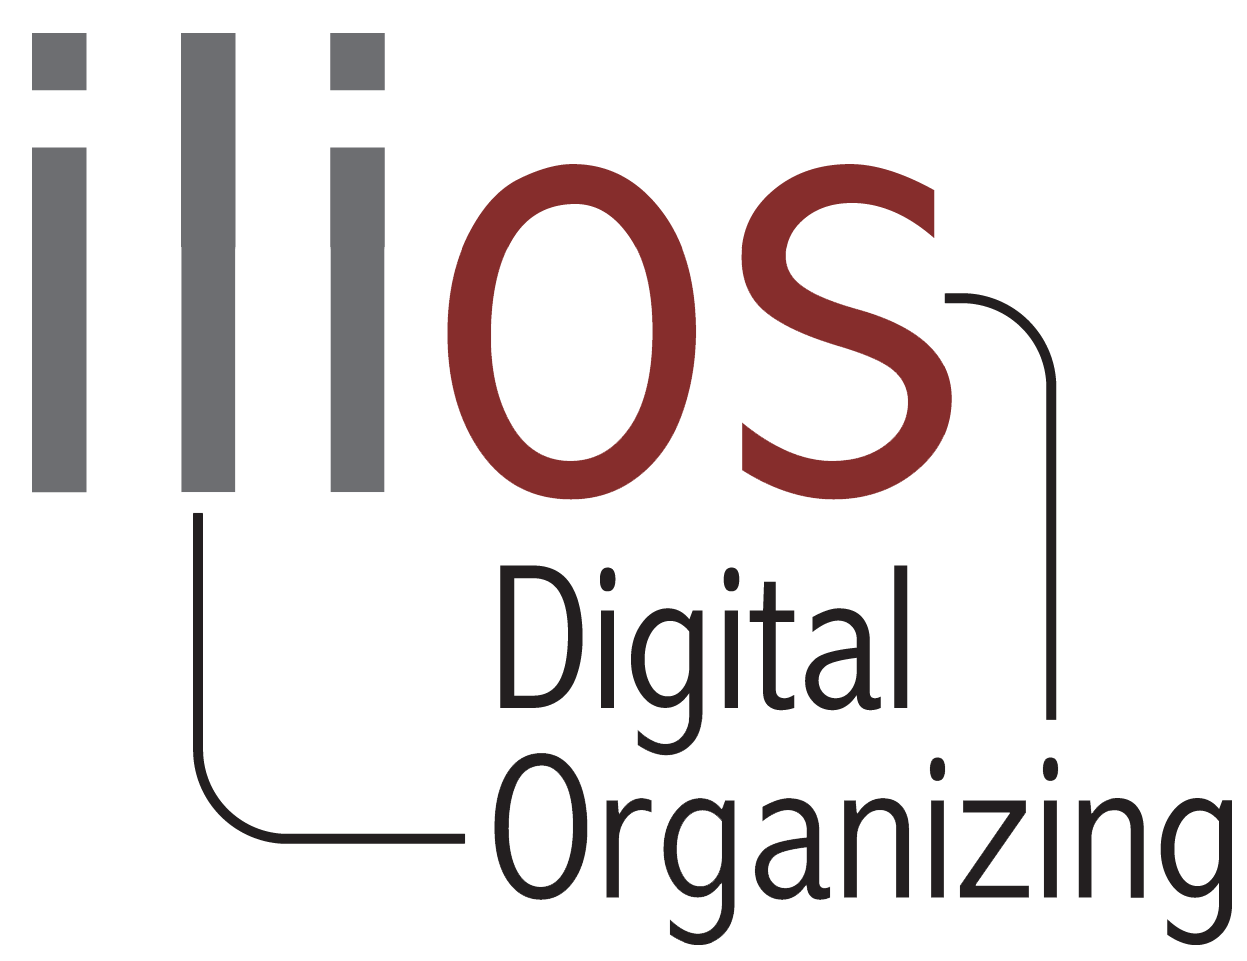 Ilios Digital Organizing